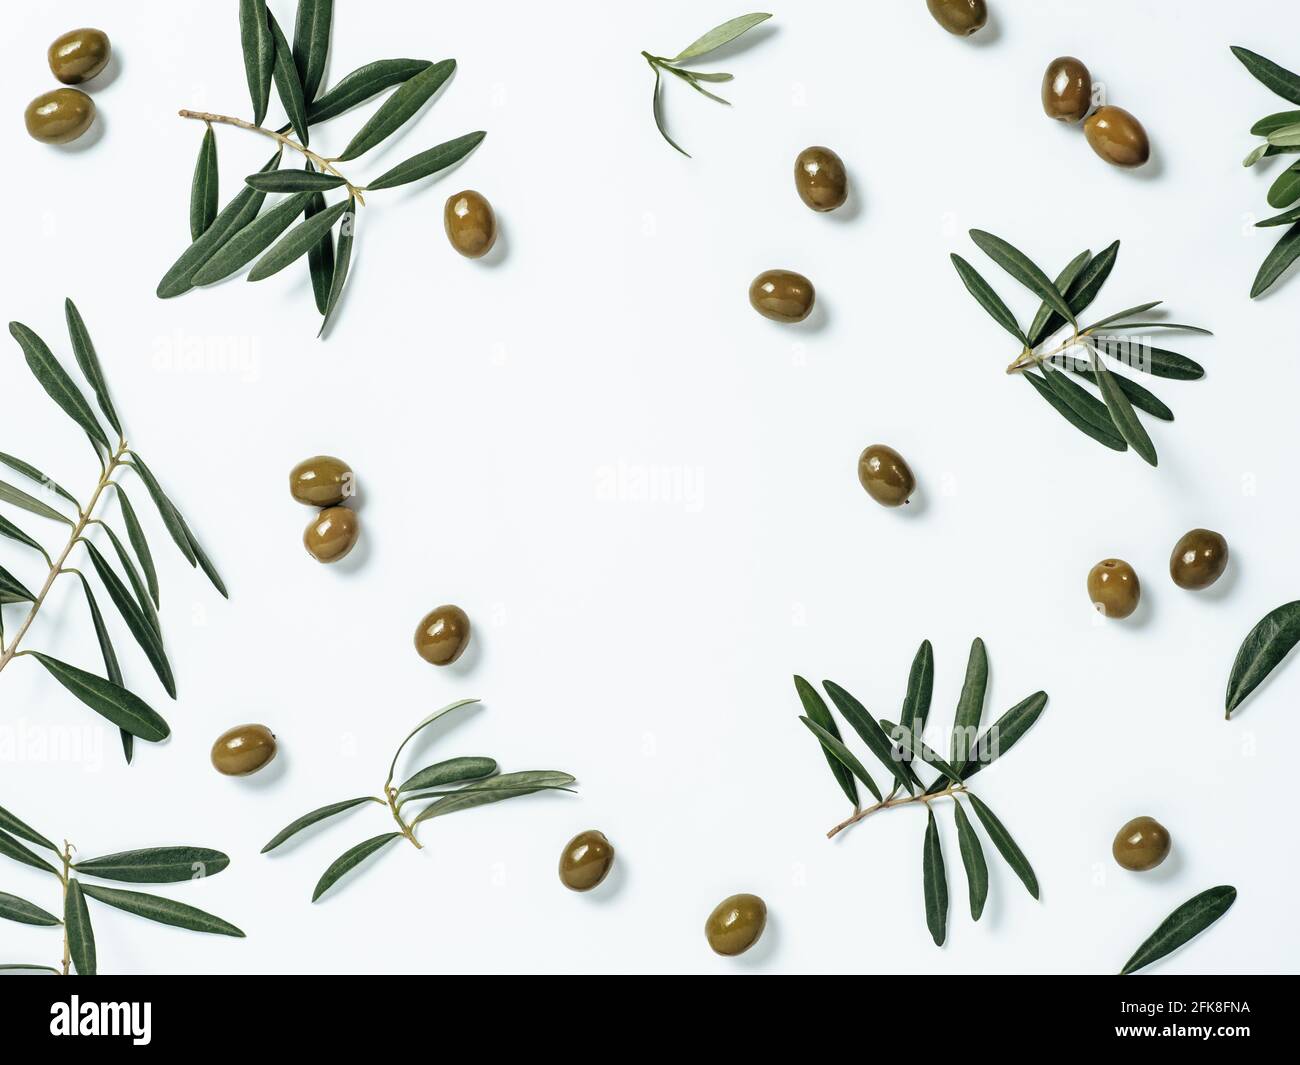 Muster mit grünen Oliven und Oliven Baum Blätter und Zweige auf weißem Hintergrund, kopieren Raum in der Mitte. Olivenbaum Früchte und Äste, Draufsicht oder flache Lage. Stockfoto